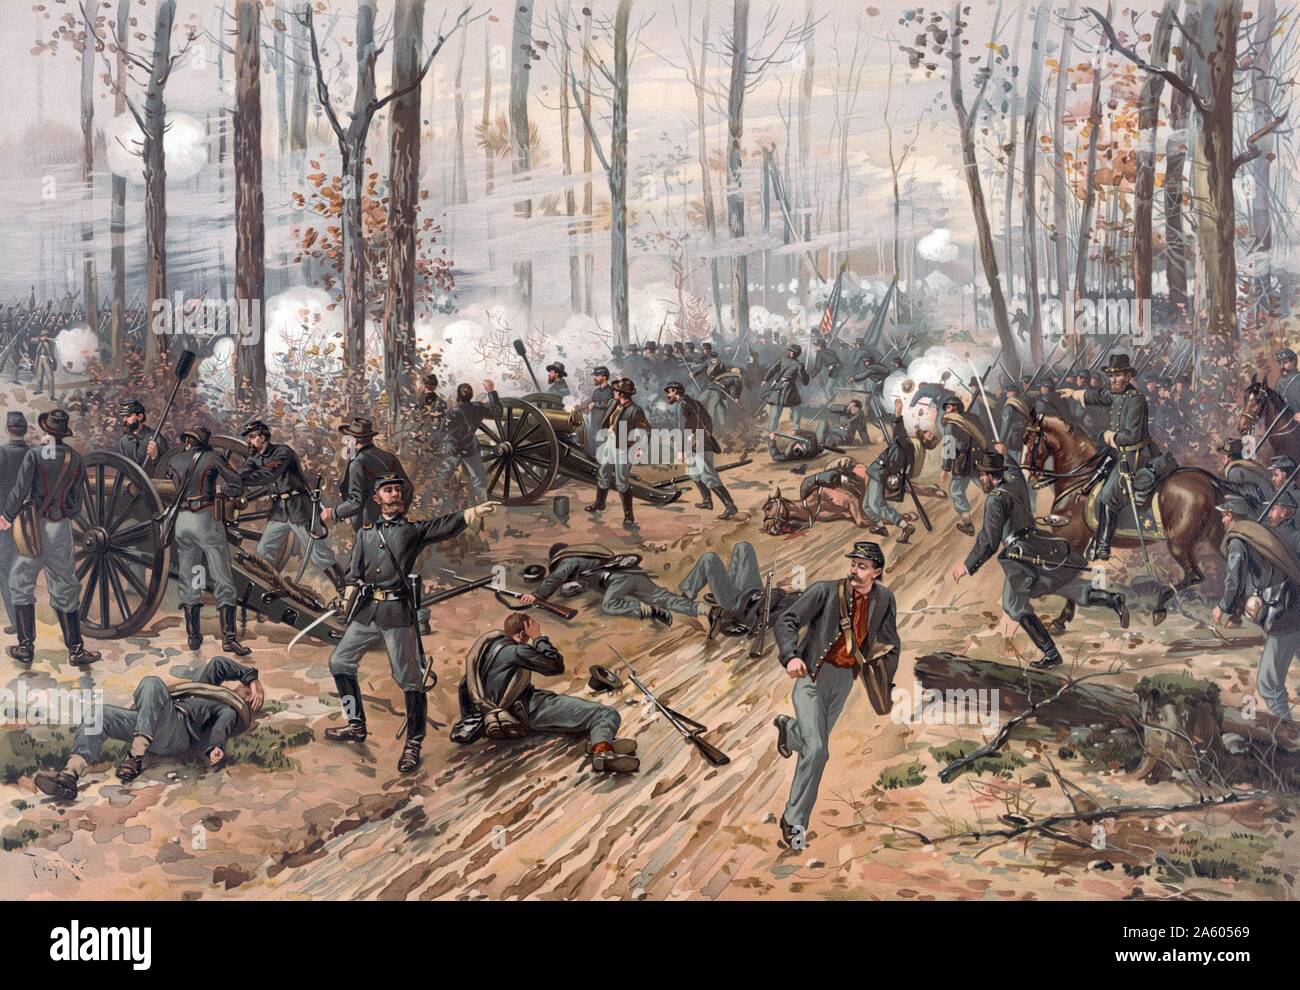 Battaglia di Shiloh, noto come la battaglia di atterraggio di Pittsburgh. Una battaglia tra gli Stati Uniti e Unione europea Stati confederati. La guerra civile americana ha avuto luogo in sud-occidentale di Tennessee 1863. Foto Stock